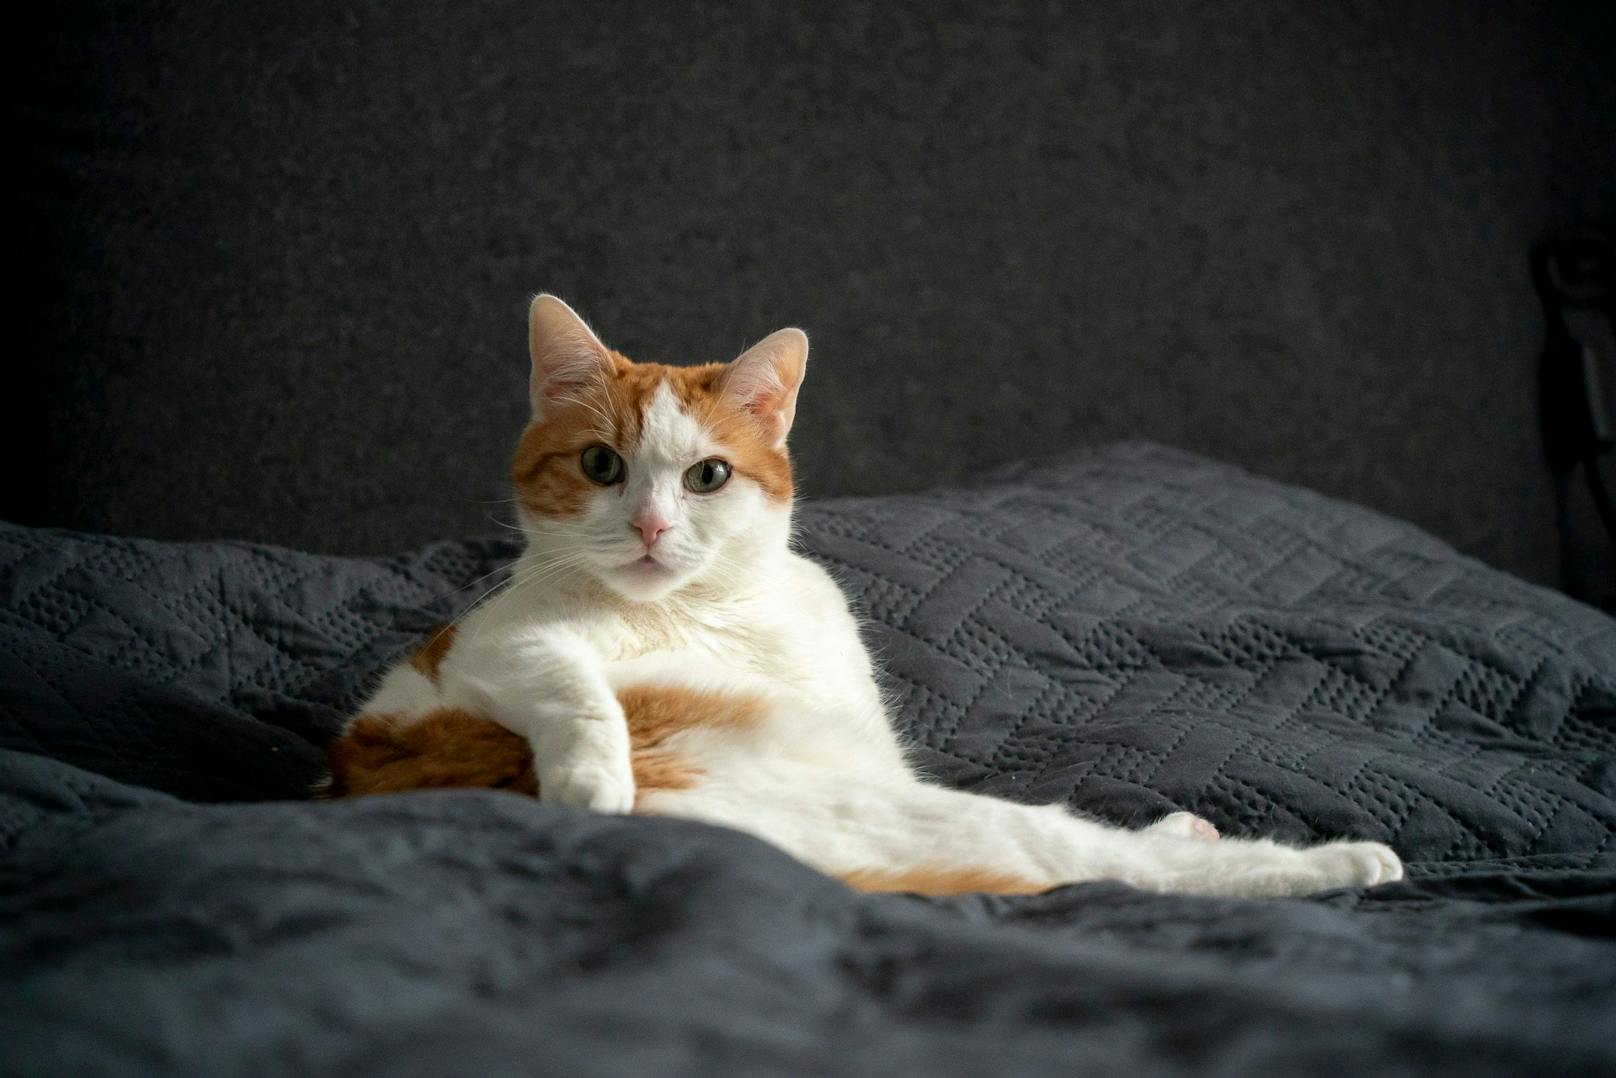 Ganz entspannt ist Katze Cookie, der hat am wenigsten Stress. Den machen die anderen beiden Katzen meistens unter sich aus